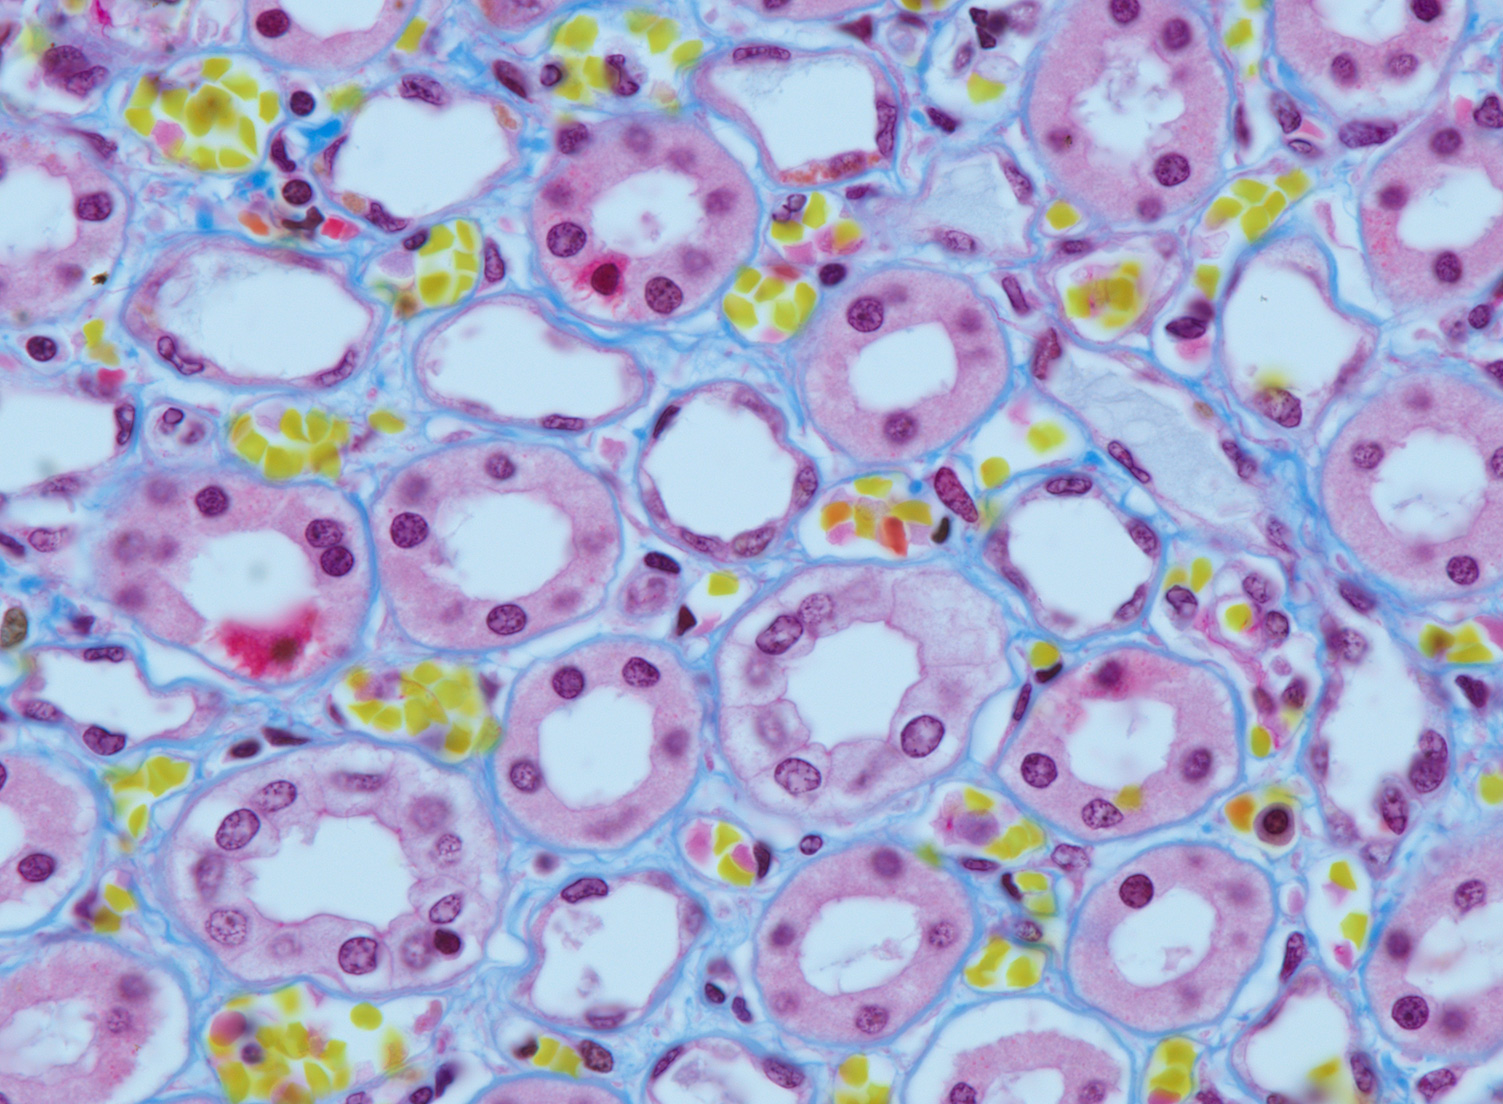 Fibrin in menschlicher Niere. Trichrom-Färbung. Objektiv: ZEISS Plan-Apochromat 63×/1,4 Oil 